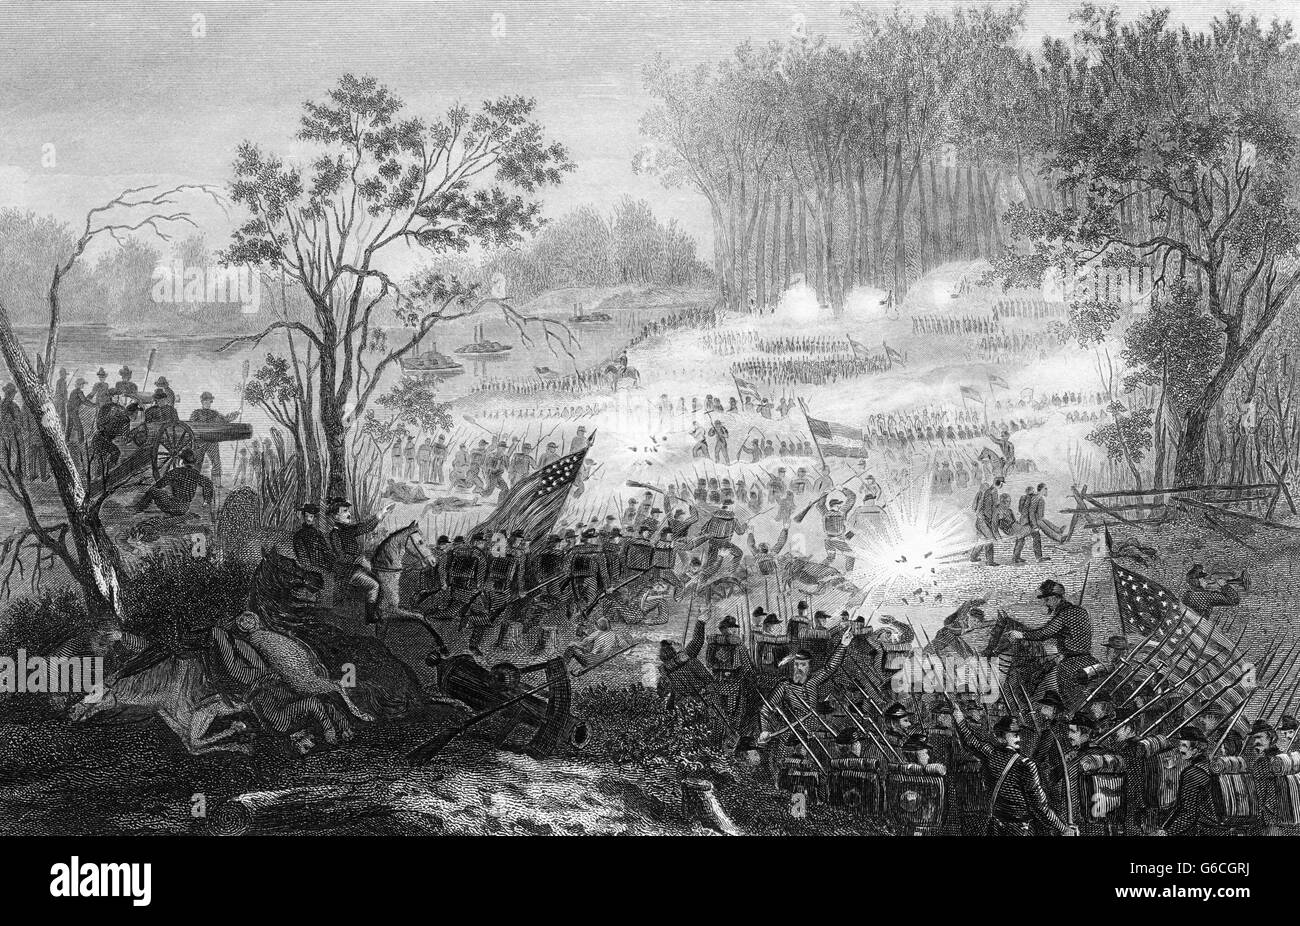 1860 aprile 1862 GUERRA CIVILE AMERICANA LA BATTAGLIA DI PITTSBURG LANDING SCILOH TENNESSEE USA Foto Stock